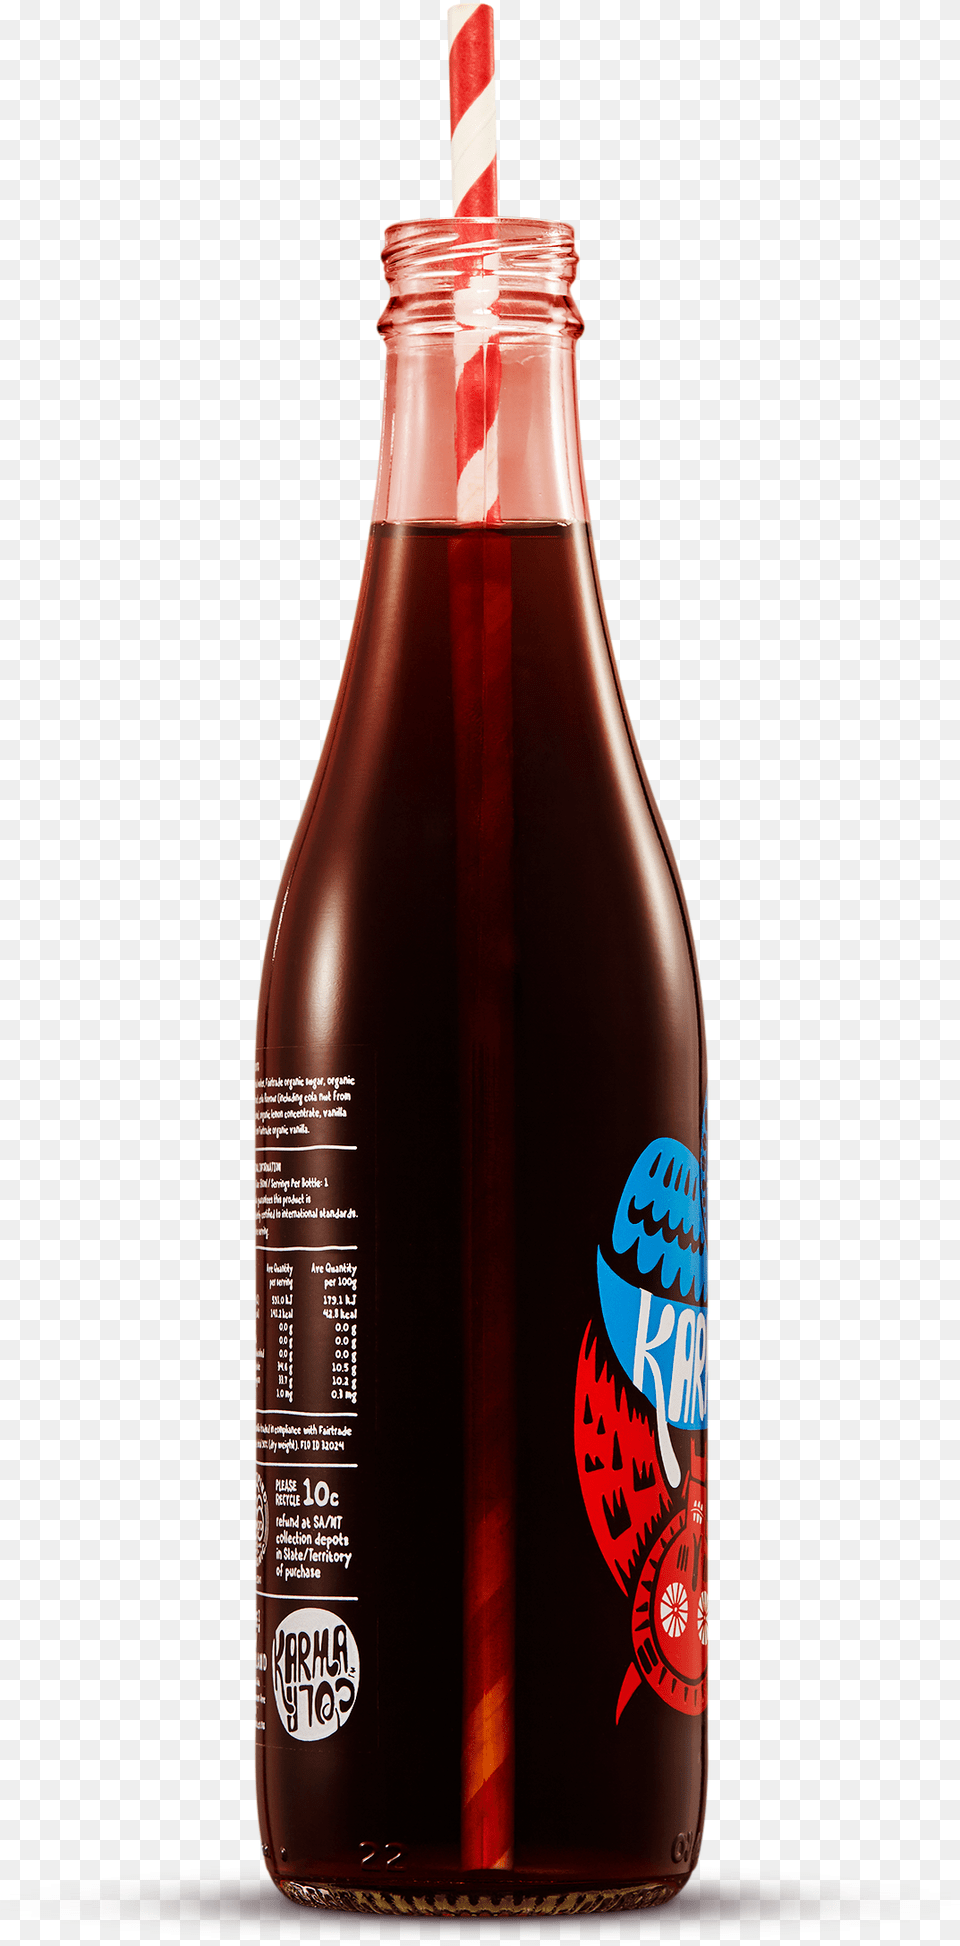 Karma Cola, Food, Ketchup, Bottle, Beverage Free Transparent Png